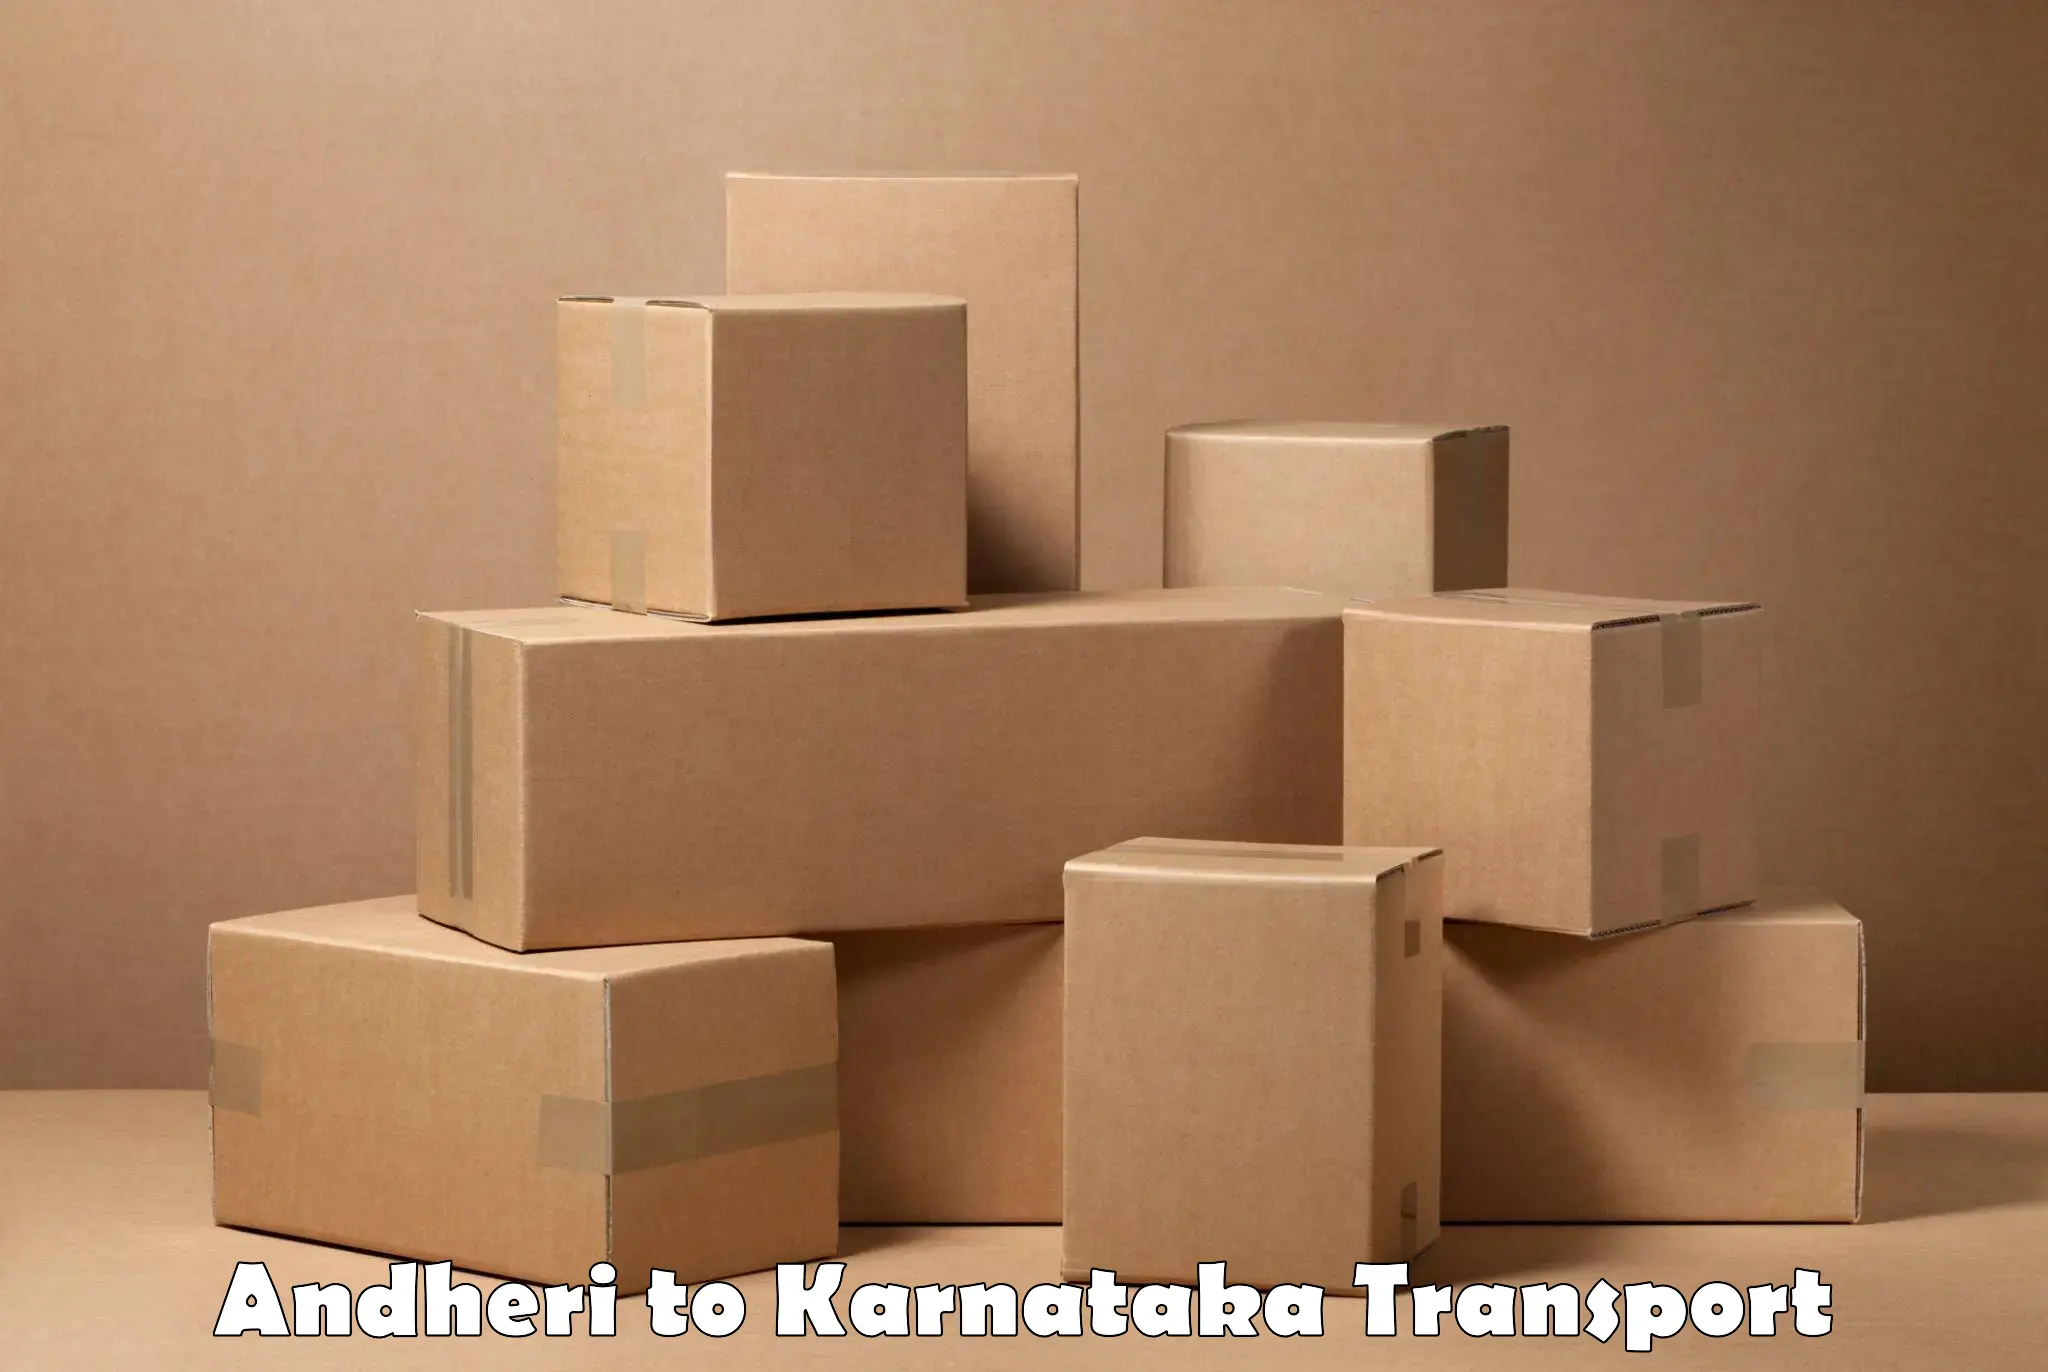 Online transport service Andheri to Karnataka